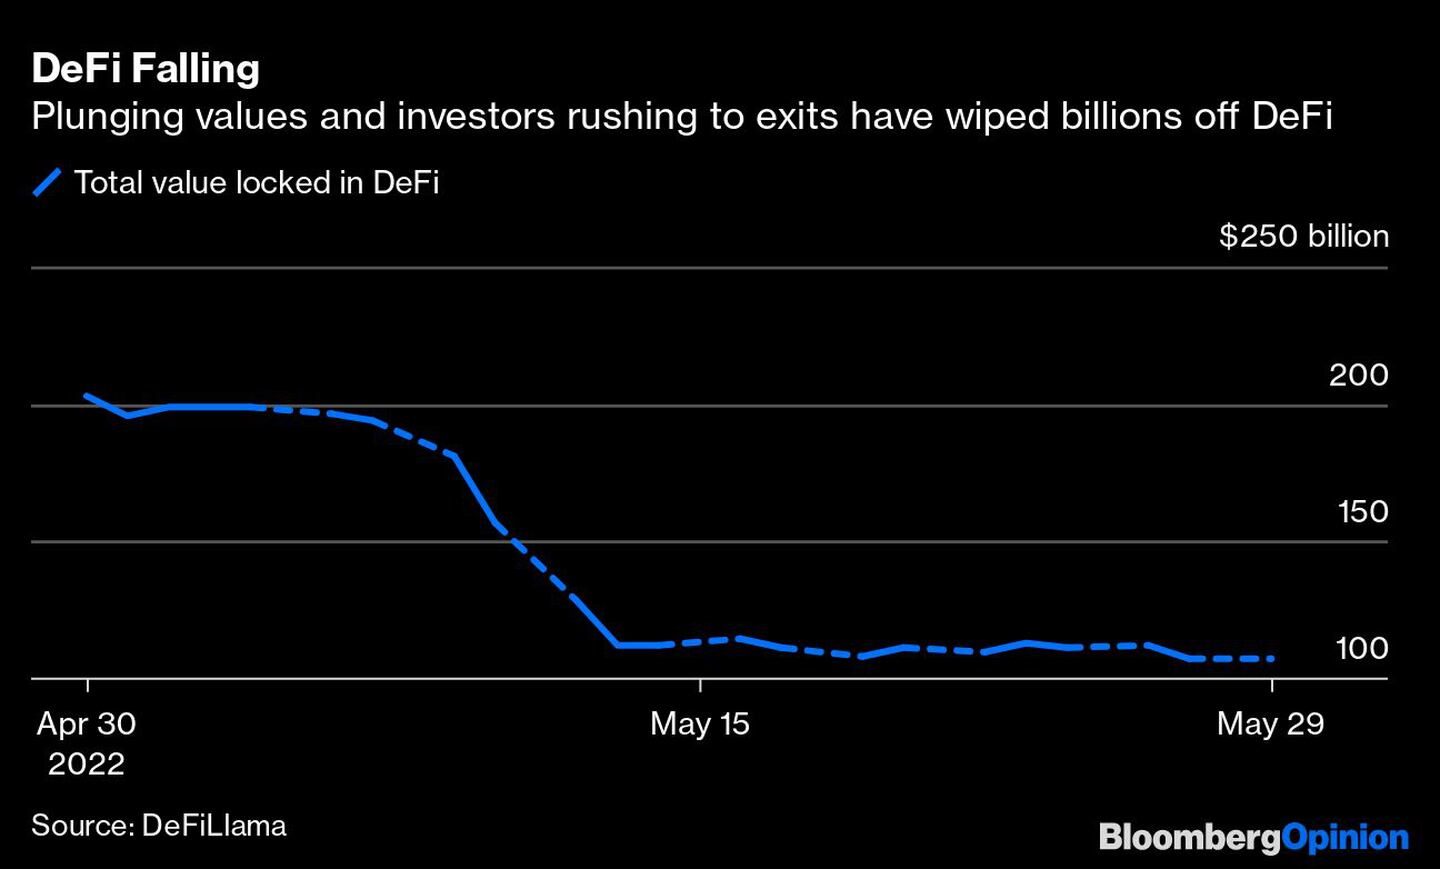 La caída de DeFi 
El desplome de los valores y las prisas de los inversores por salir han hecho desaparecer miles de millones de DeFi
Azul: Valor total bloqueado en DeFidfd